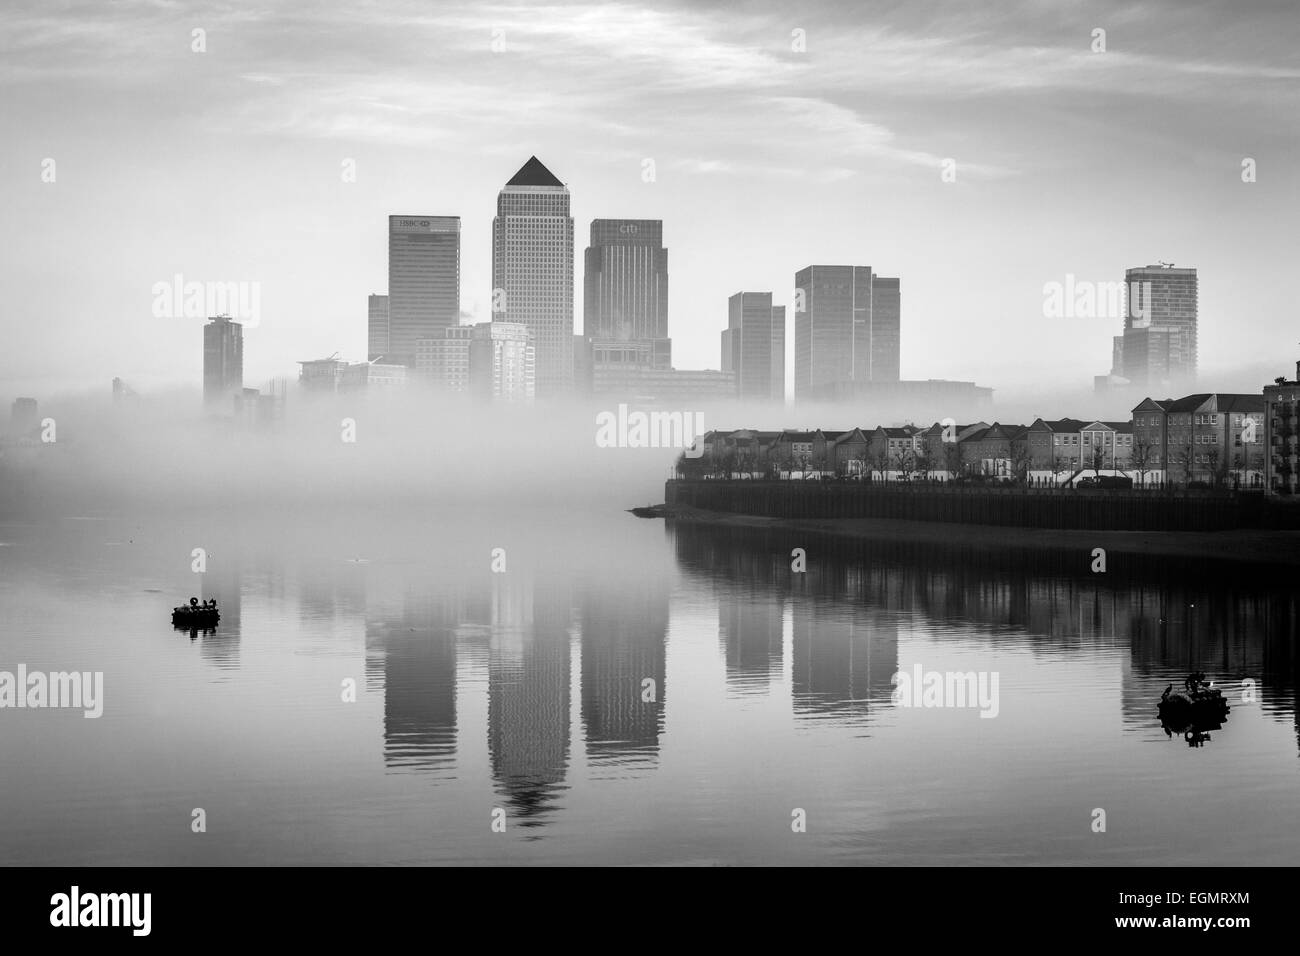 Le quartier financier de Canary Wharf à travers le brouillard, Londres, Angleterre Banque D'Images